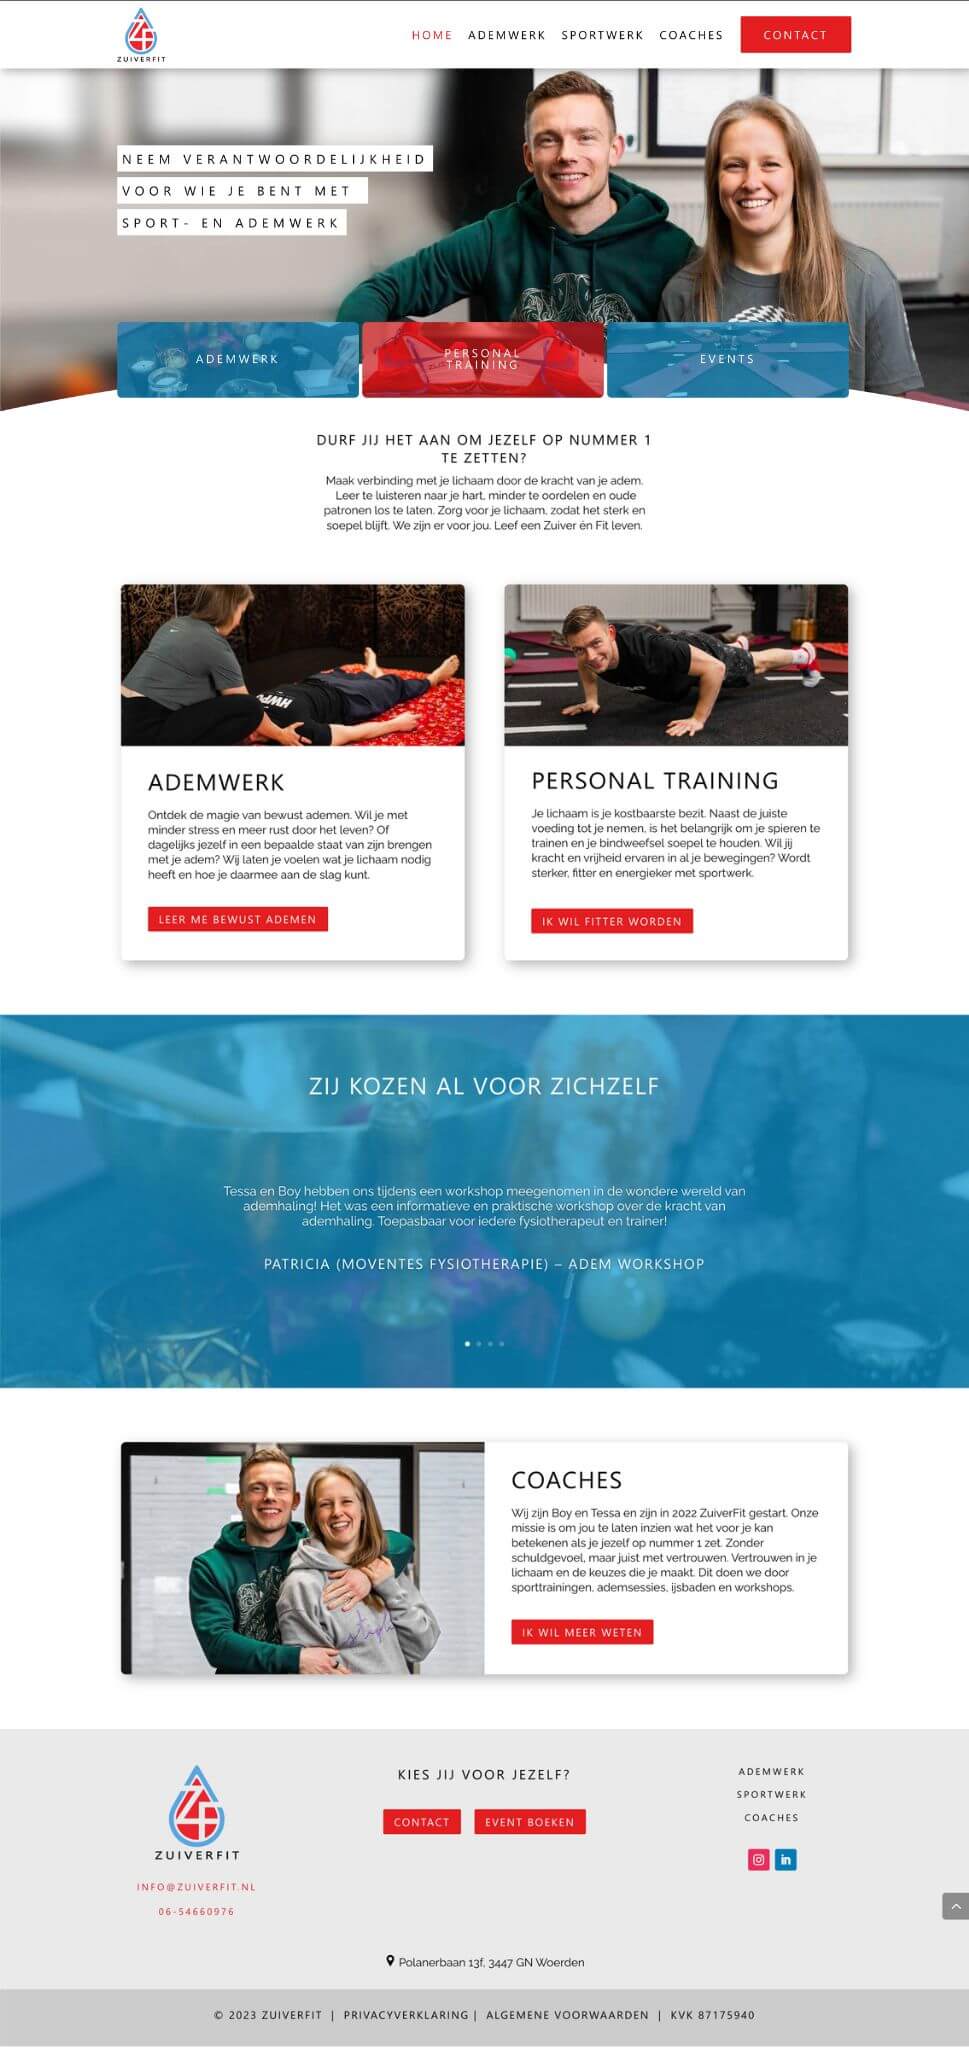 Homepage zuiverfit personal training en ademwerk